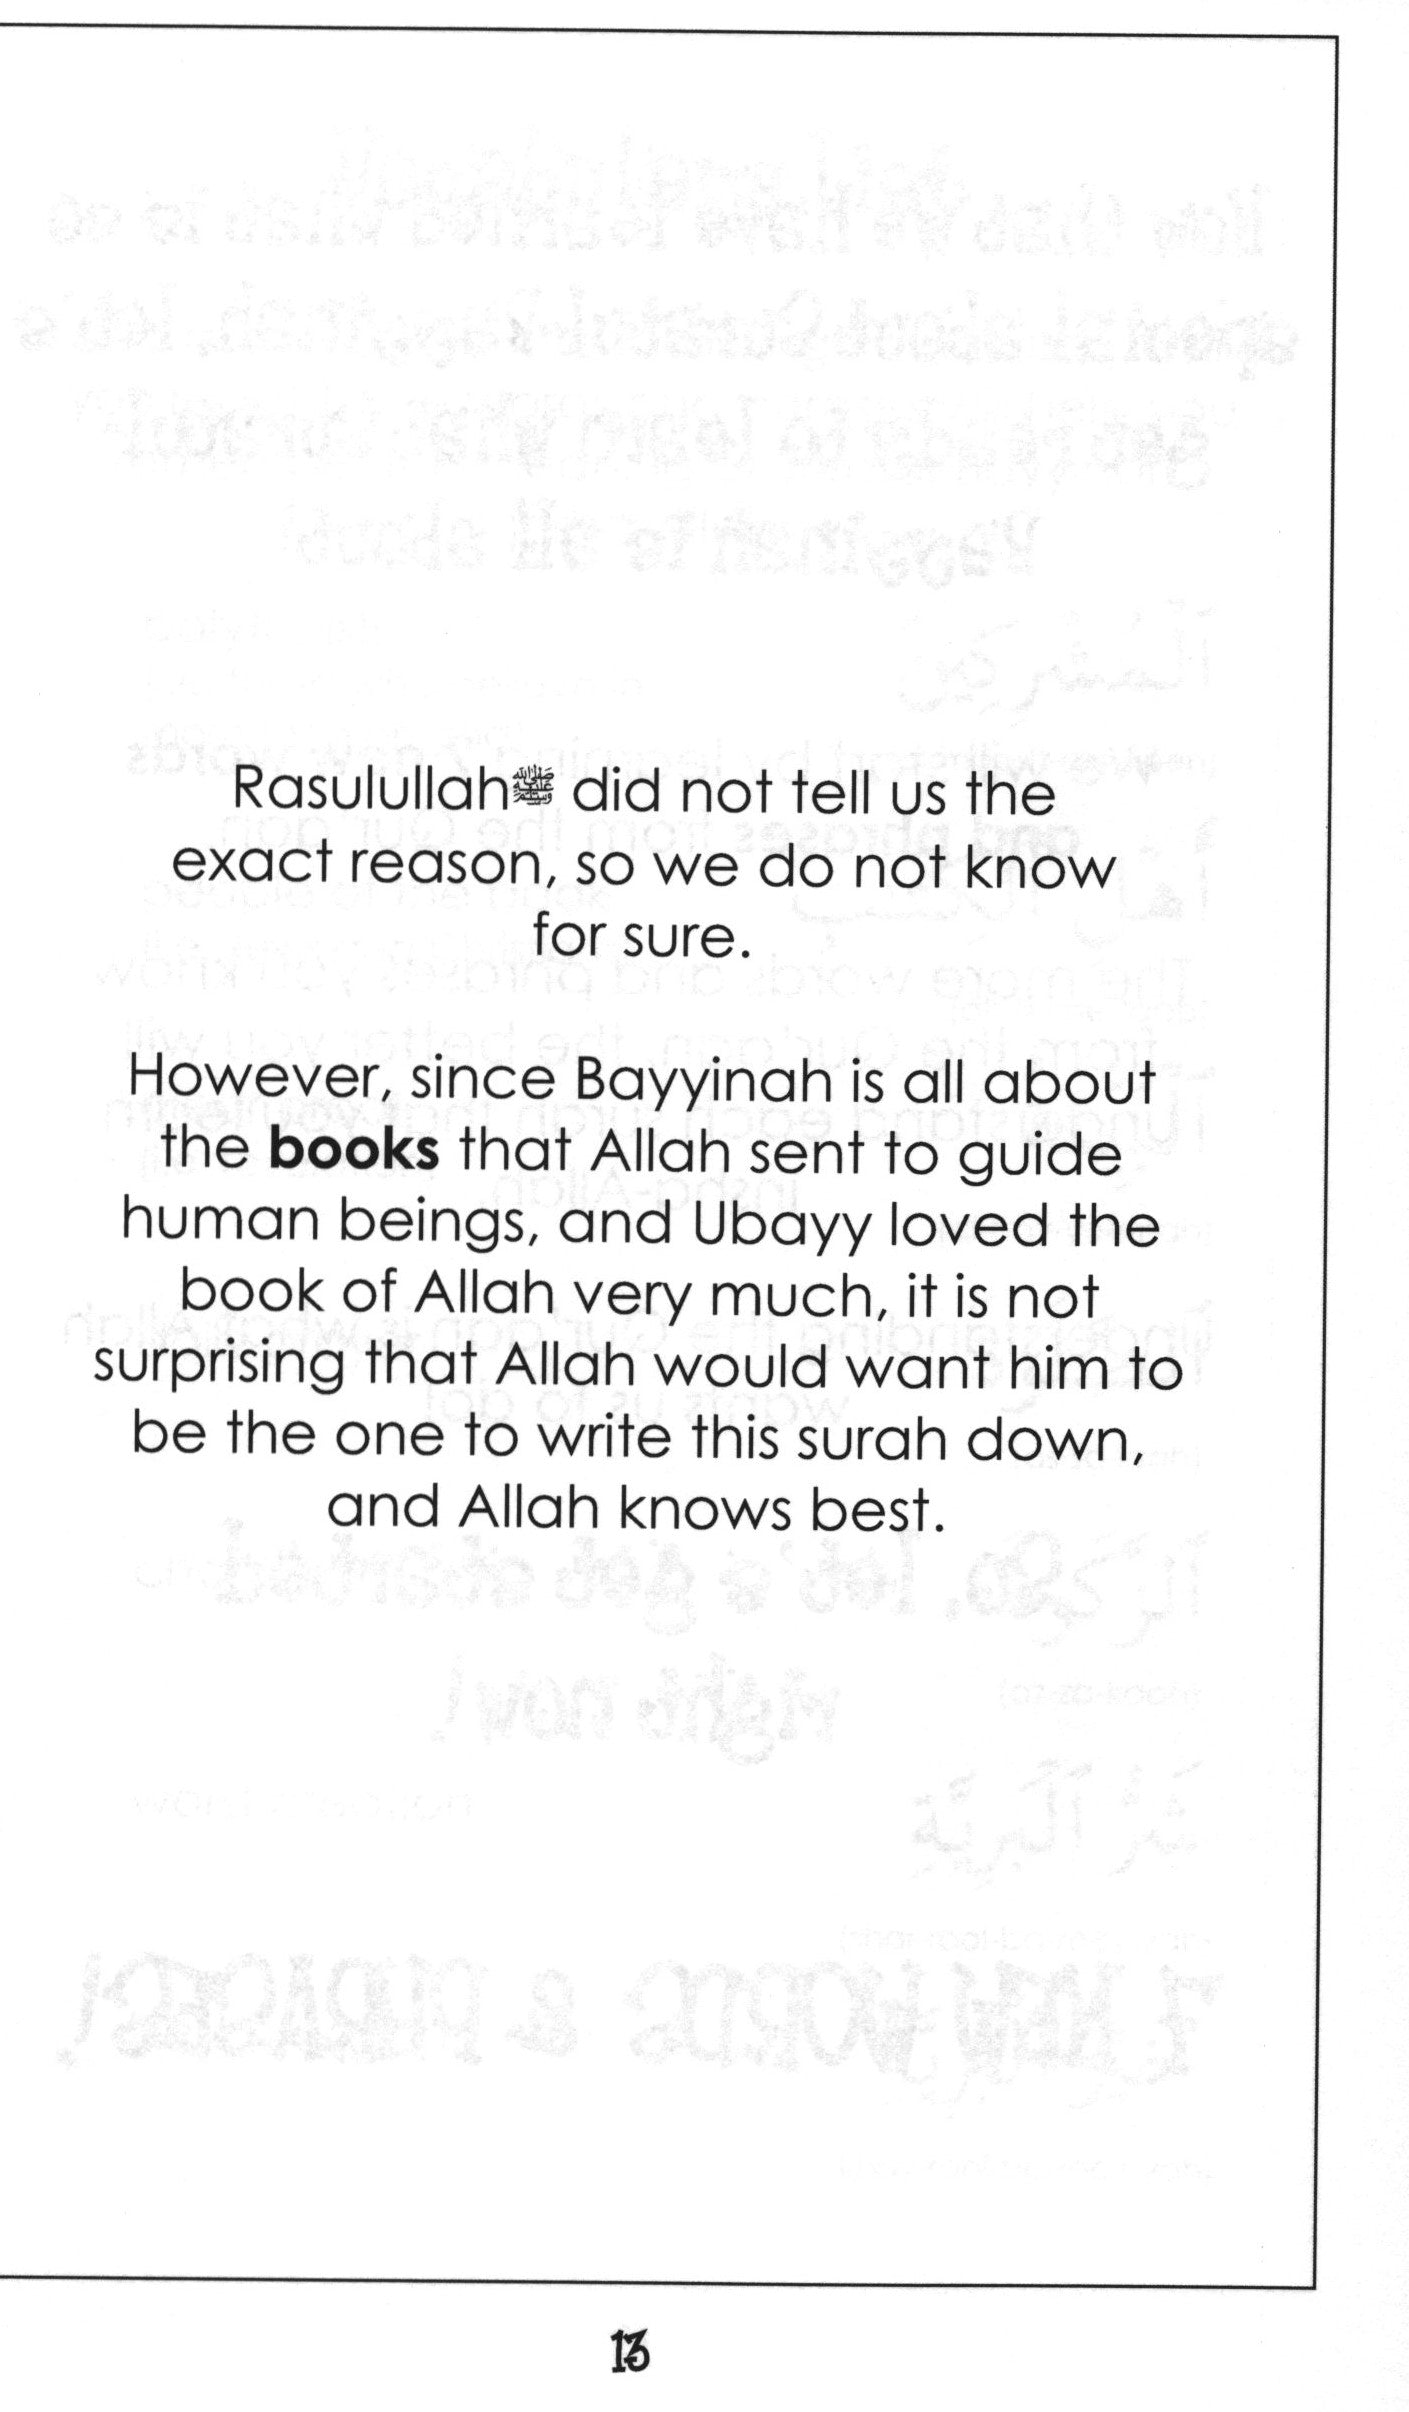 Mini Tafseer Book Suratul Bayyinah (Surah 98)